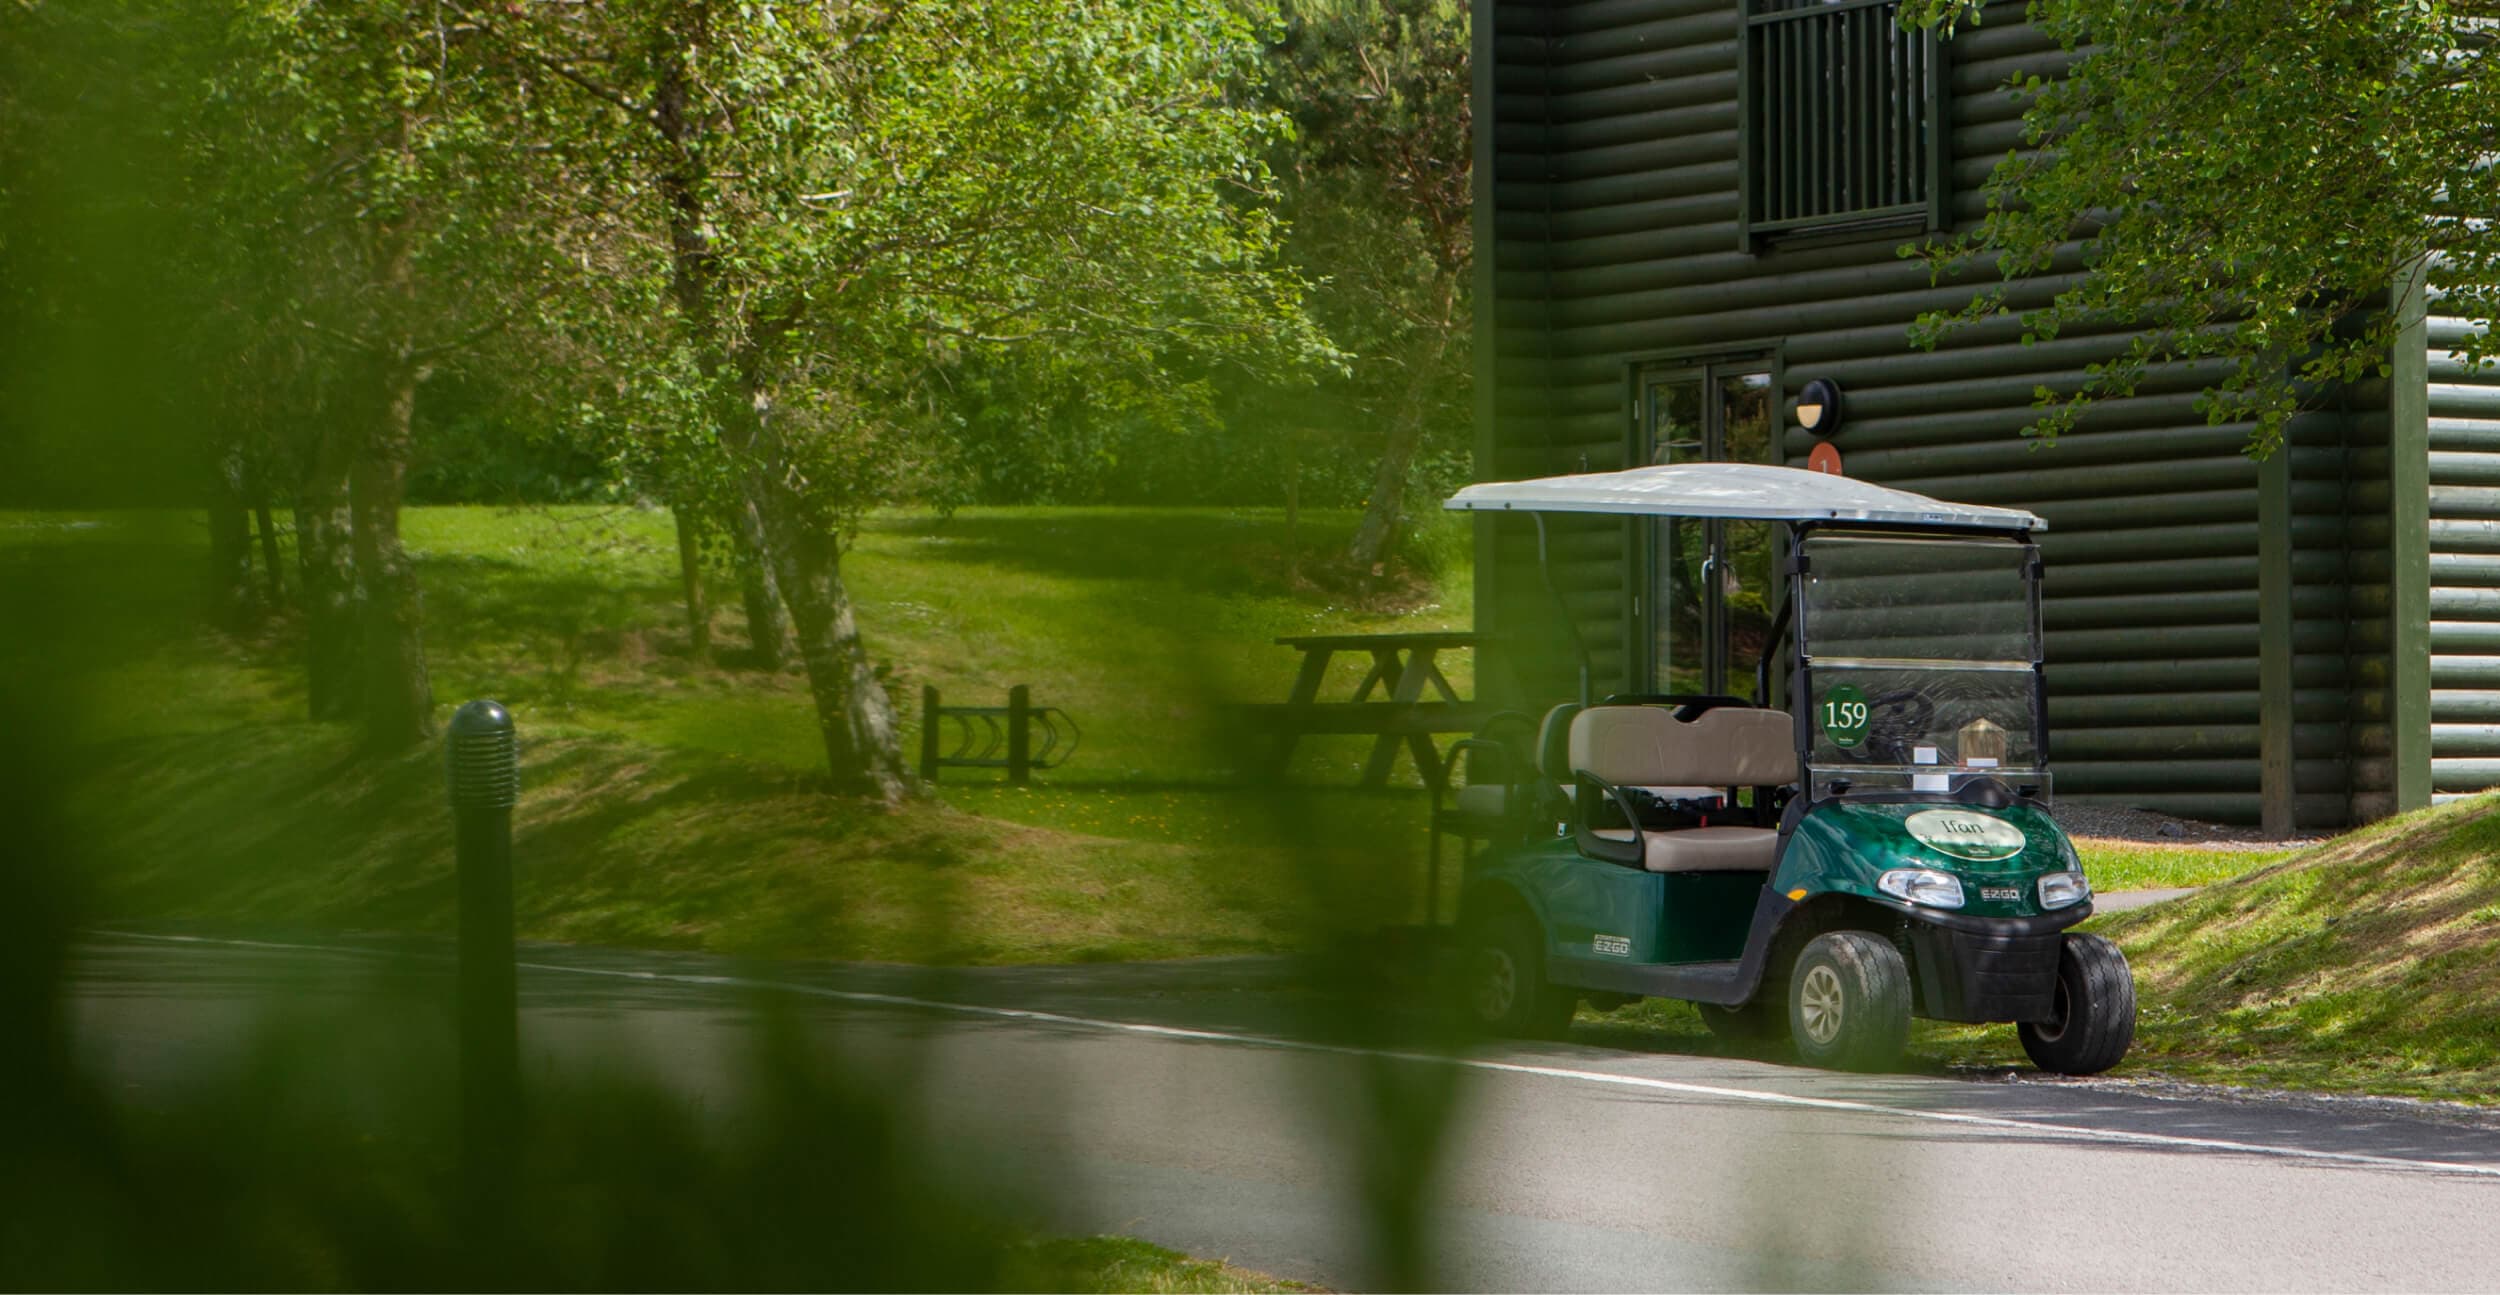 Parked golf cart